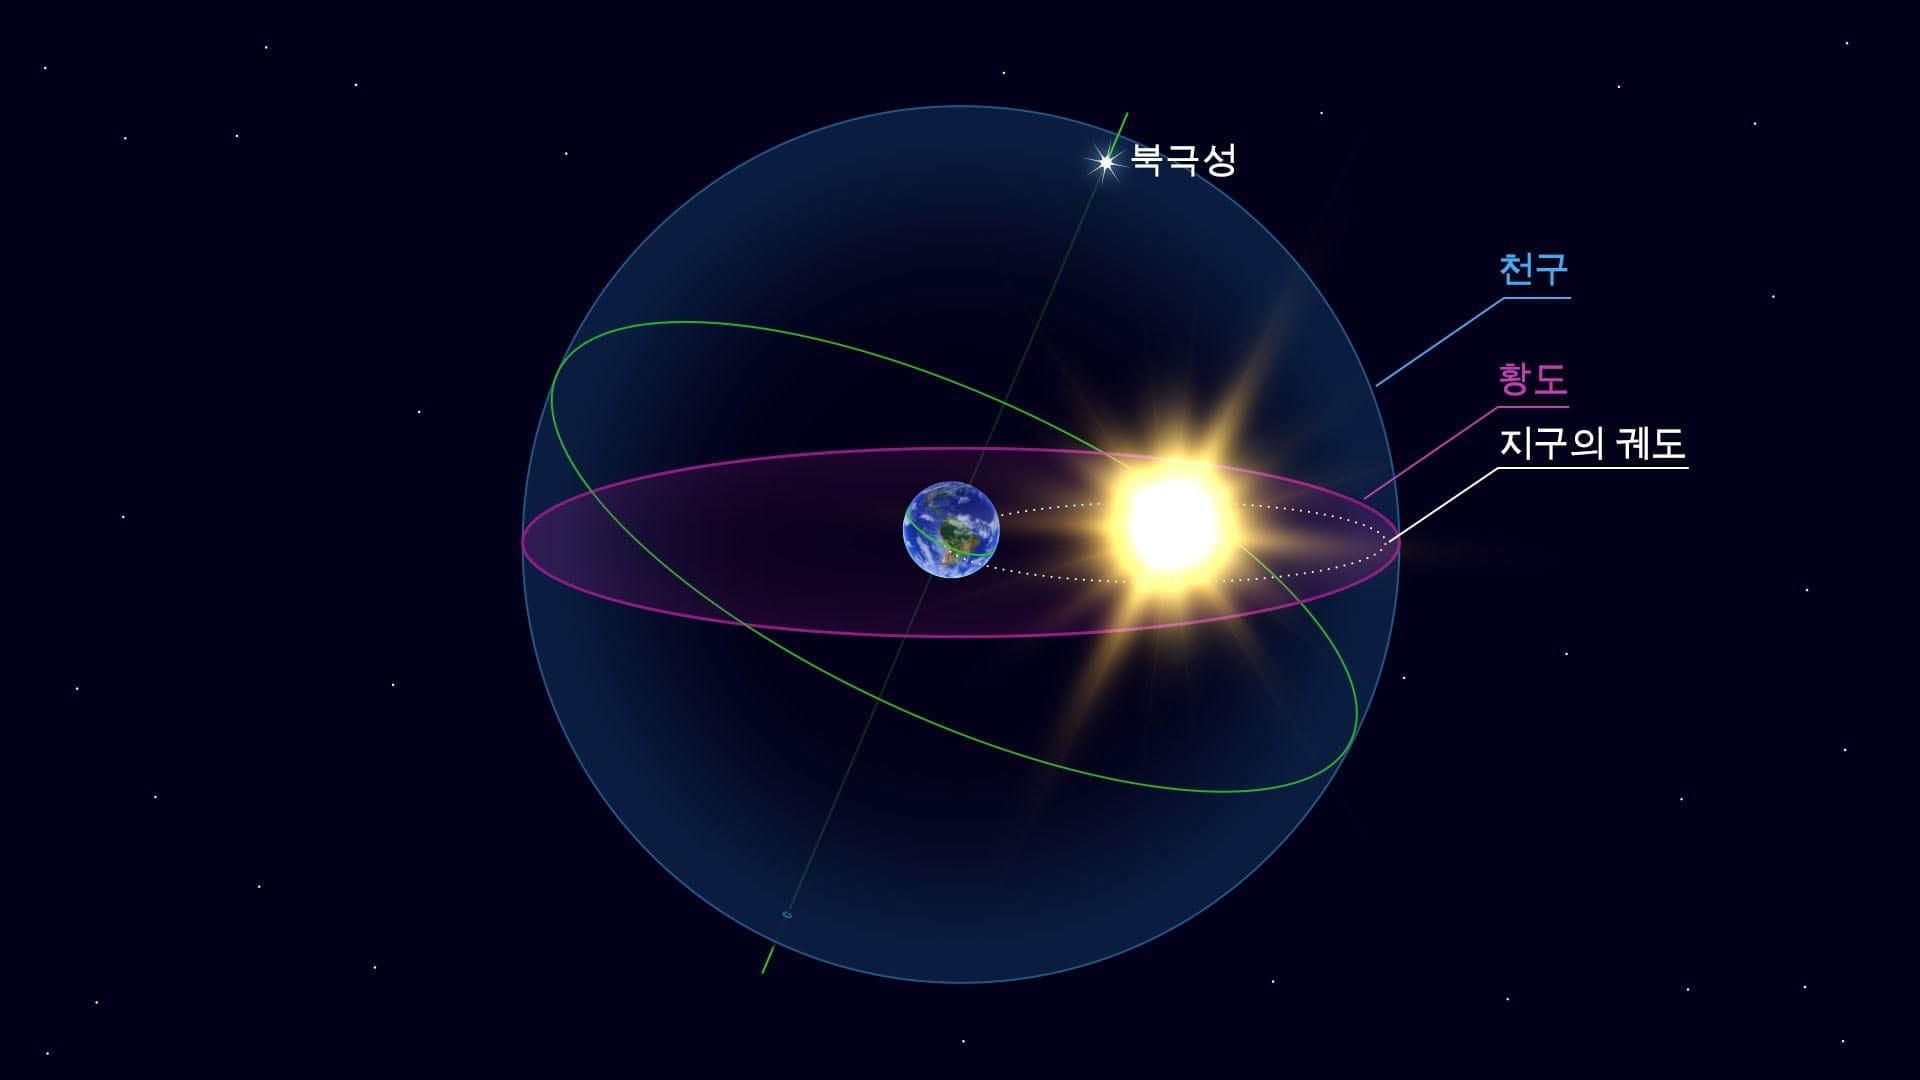 황도면 - 지구의 공전 궤도면